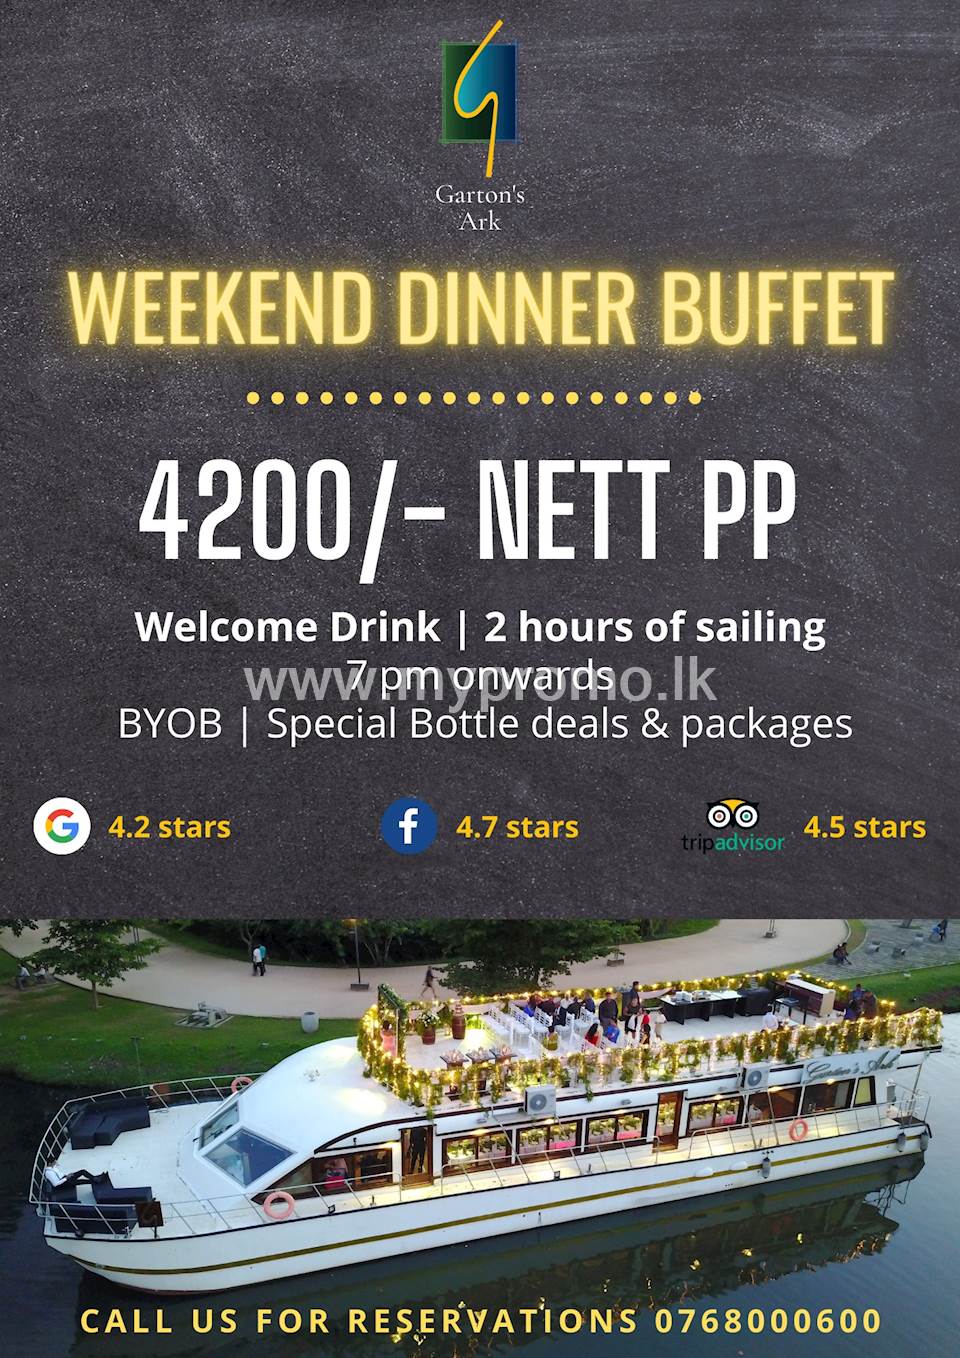 Weekend Dinner Buffet at Garton's Ark